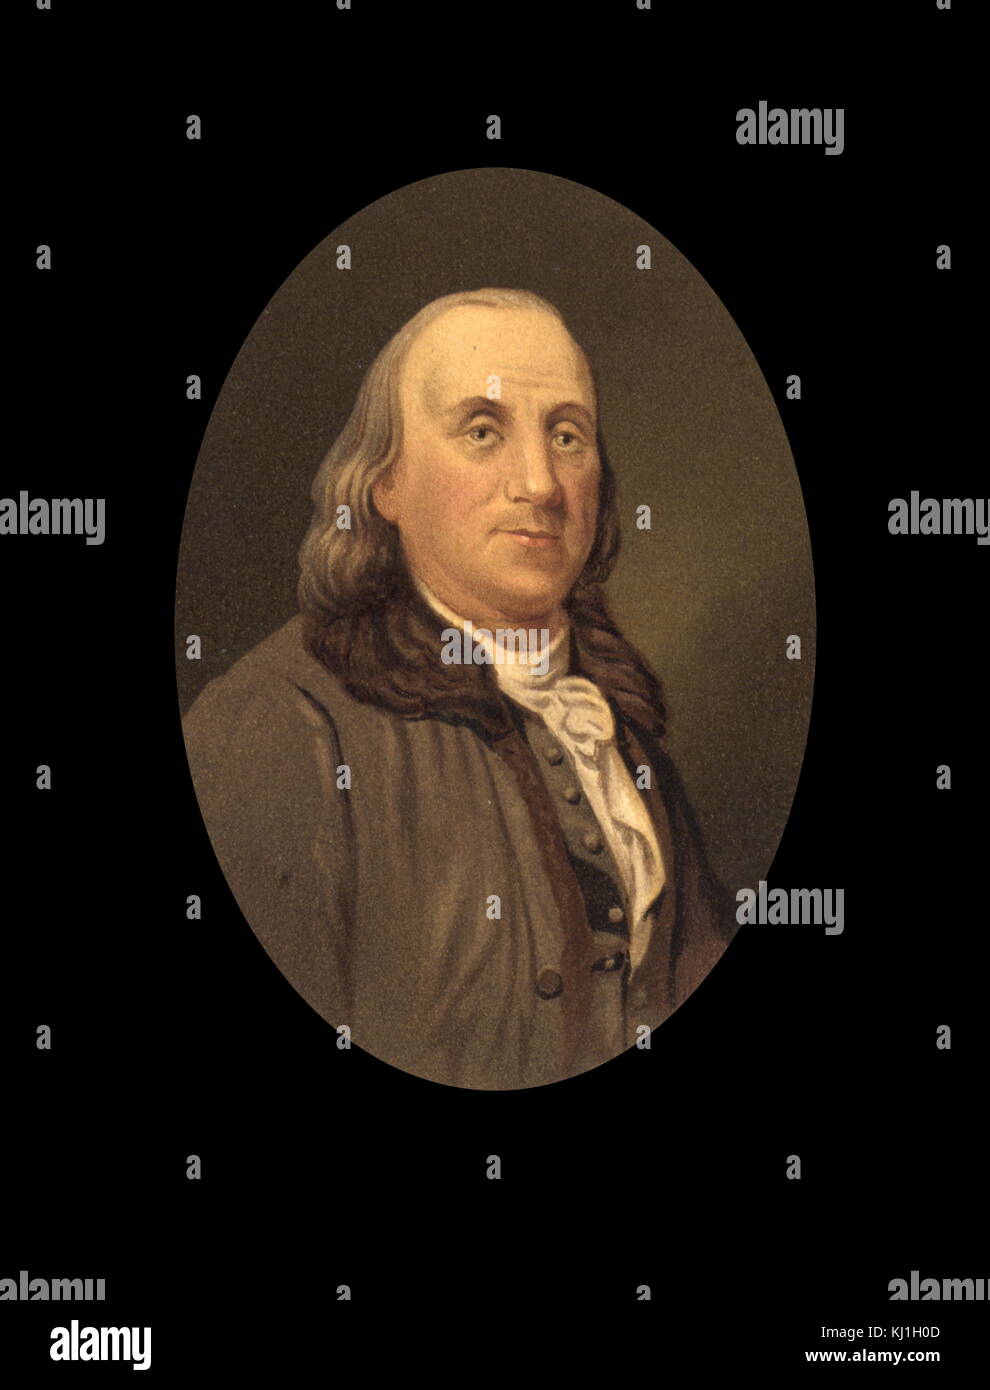 Benjamin Franklin (1705 - 1790) fu uno dei padri fondatori degli Stati Uniti. Franklin era un rinomato polymath e un autore principale, una stampante, un teorico politico, un politico massone, postmaster, scienziato, inventore, attivista civica, statista e diplomatico. Preso da una illustrazione del 1800 intitolato 'Distinguished muratori della rivoluzione" Foto Stock